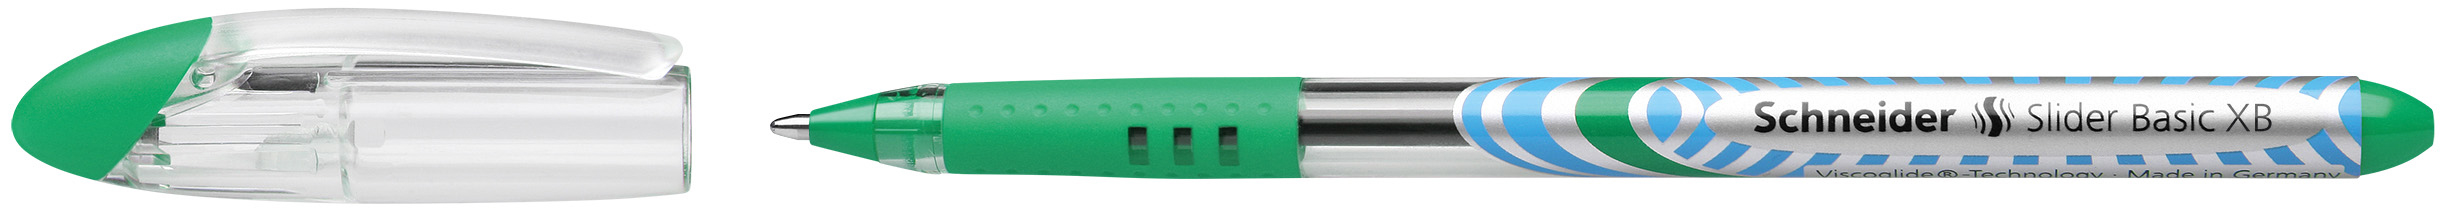 SCHNEIDER Stylo Slider Basic 0.7mm 151204 vert